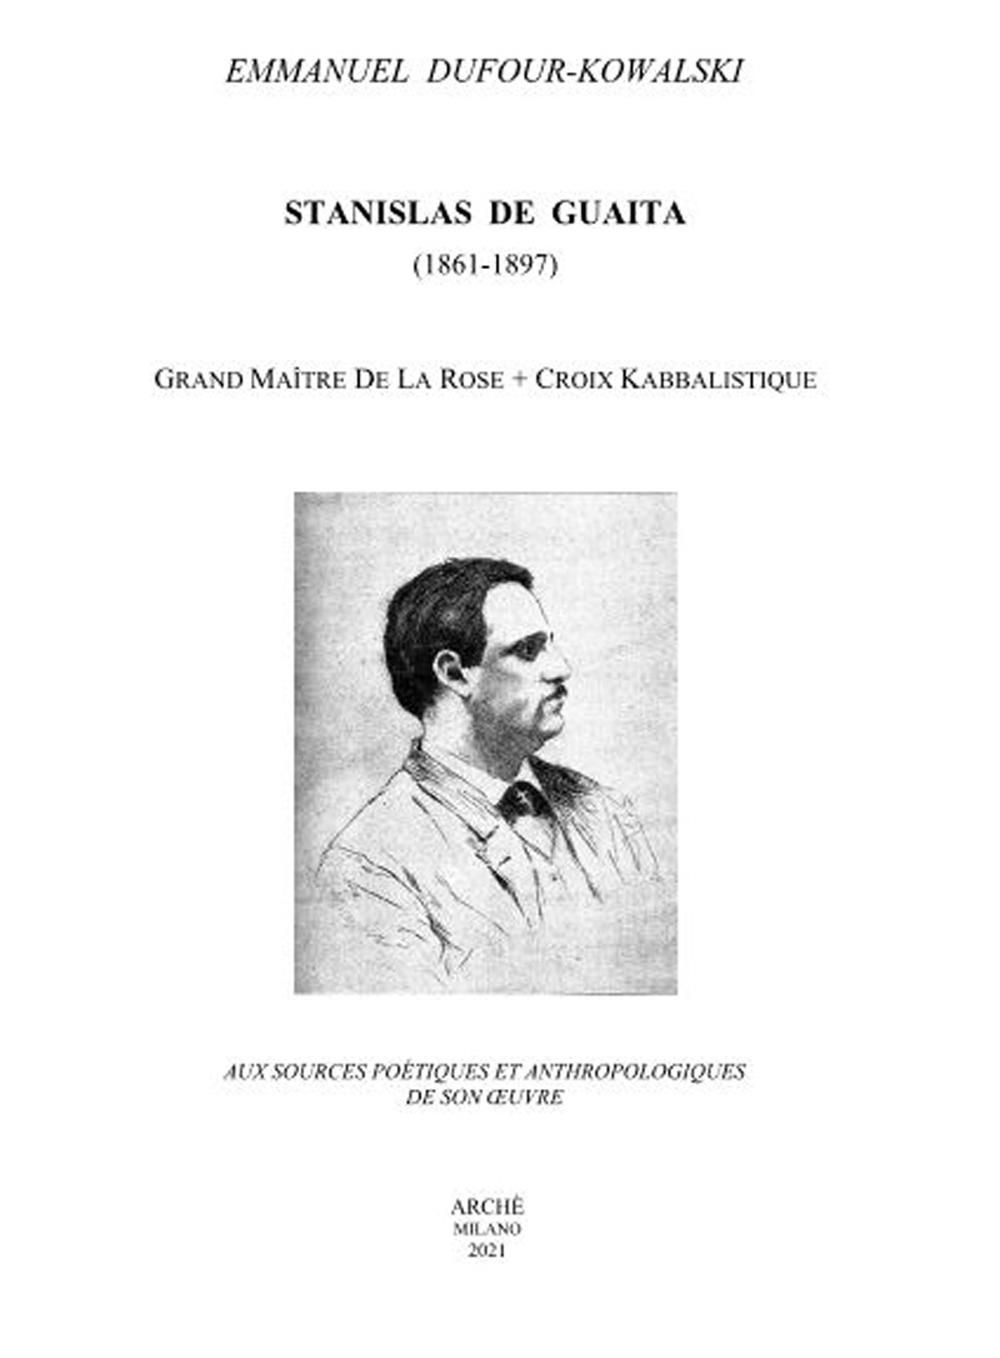 Stanislas De Guaita (1861-1897) Grand Maitre de la Rose+Croix kabbalistique. Aux sources poétiques et anthropologiques de son oeuvre